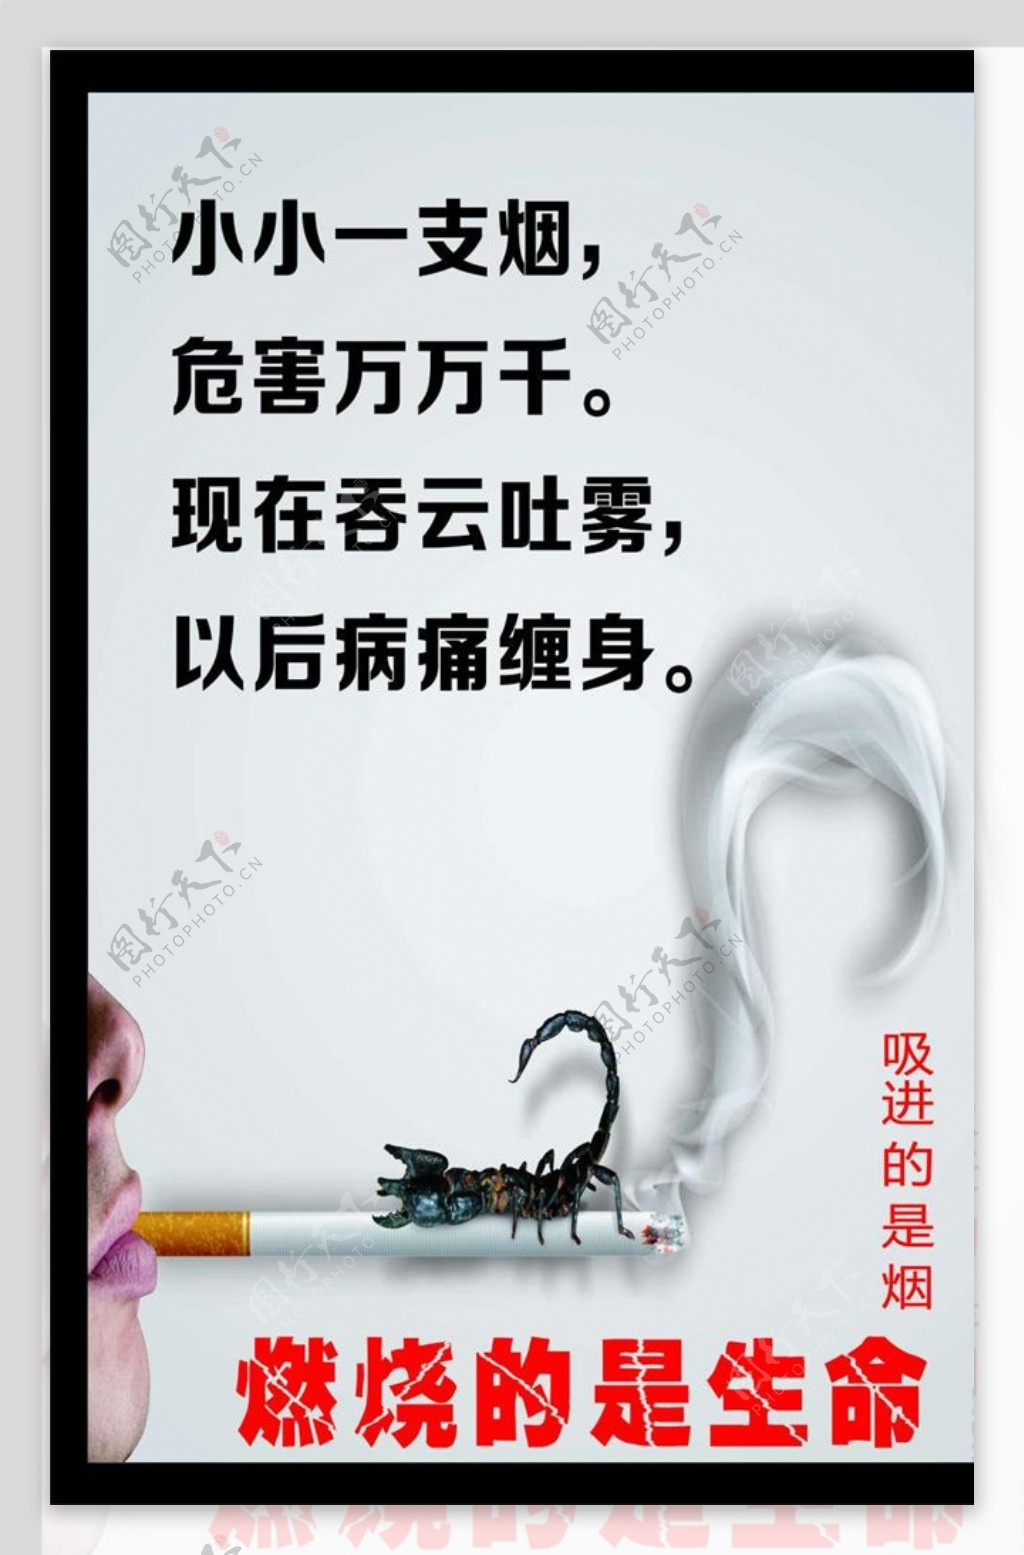 禁止吸烟公益宣传海报宣传活动模